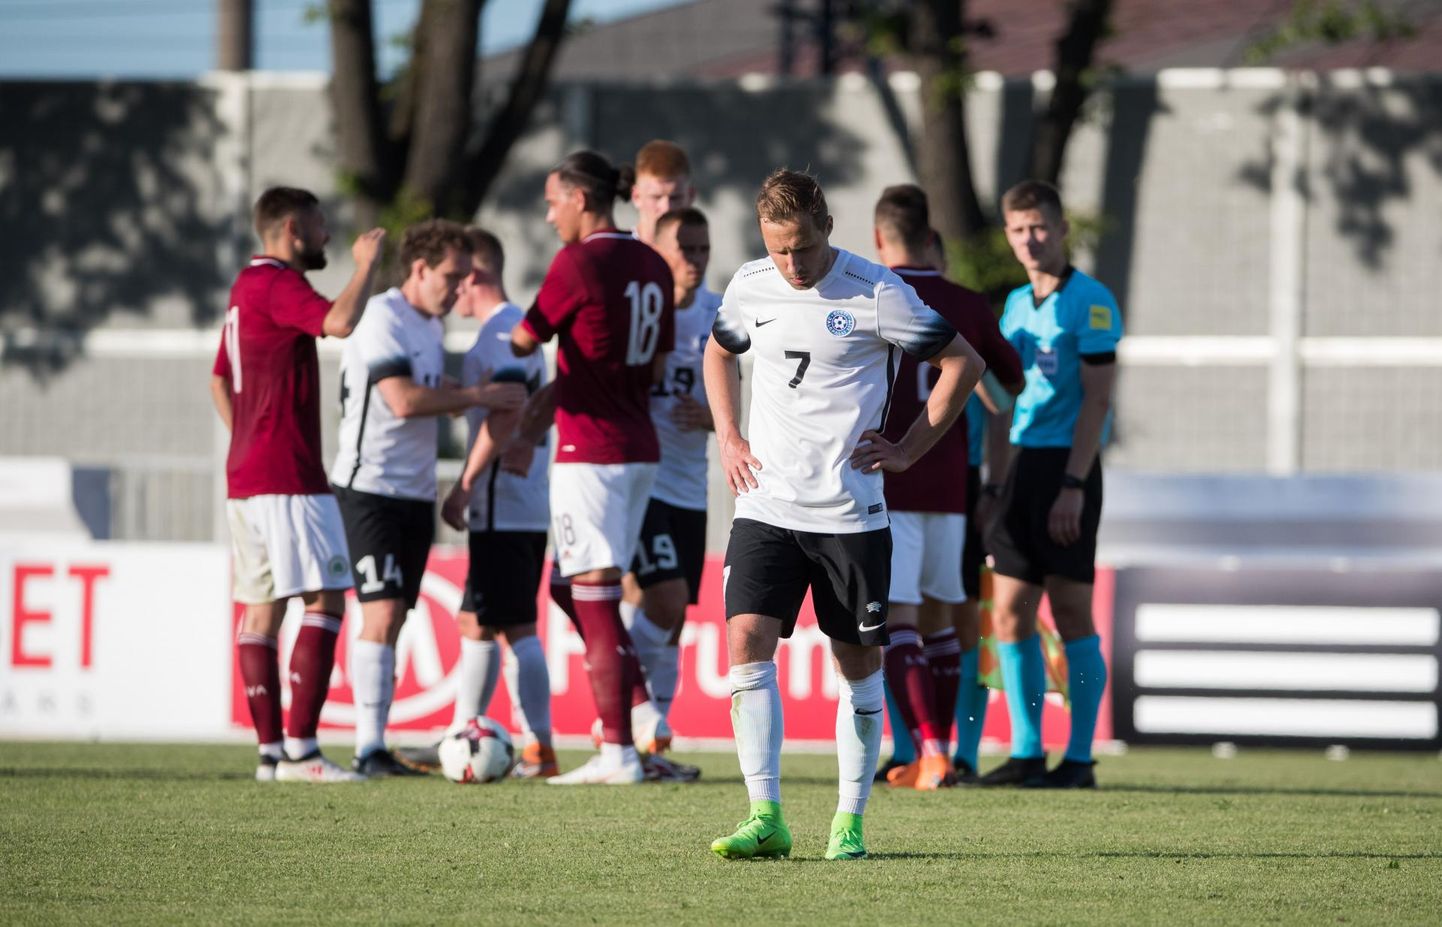 Eesti jalgpallikoondis kaotas Balti turniiril Lätile 0:1, aga säilitas võimaluse üldvõidule, mille tarbeks pean homne Leedu - Läti kohtumine lõppema kodumeeskonna ühe- või kaheväravalise võiduga.